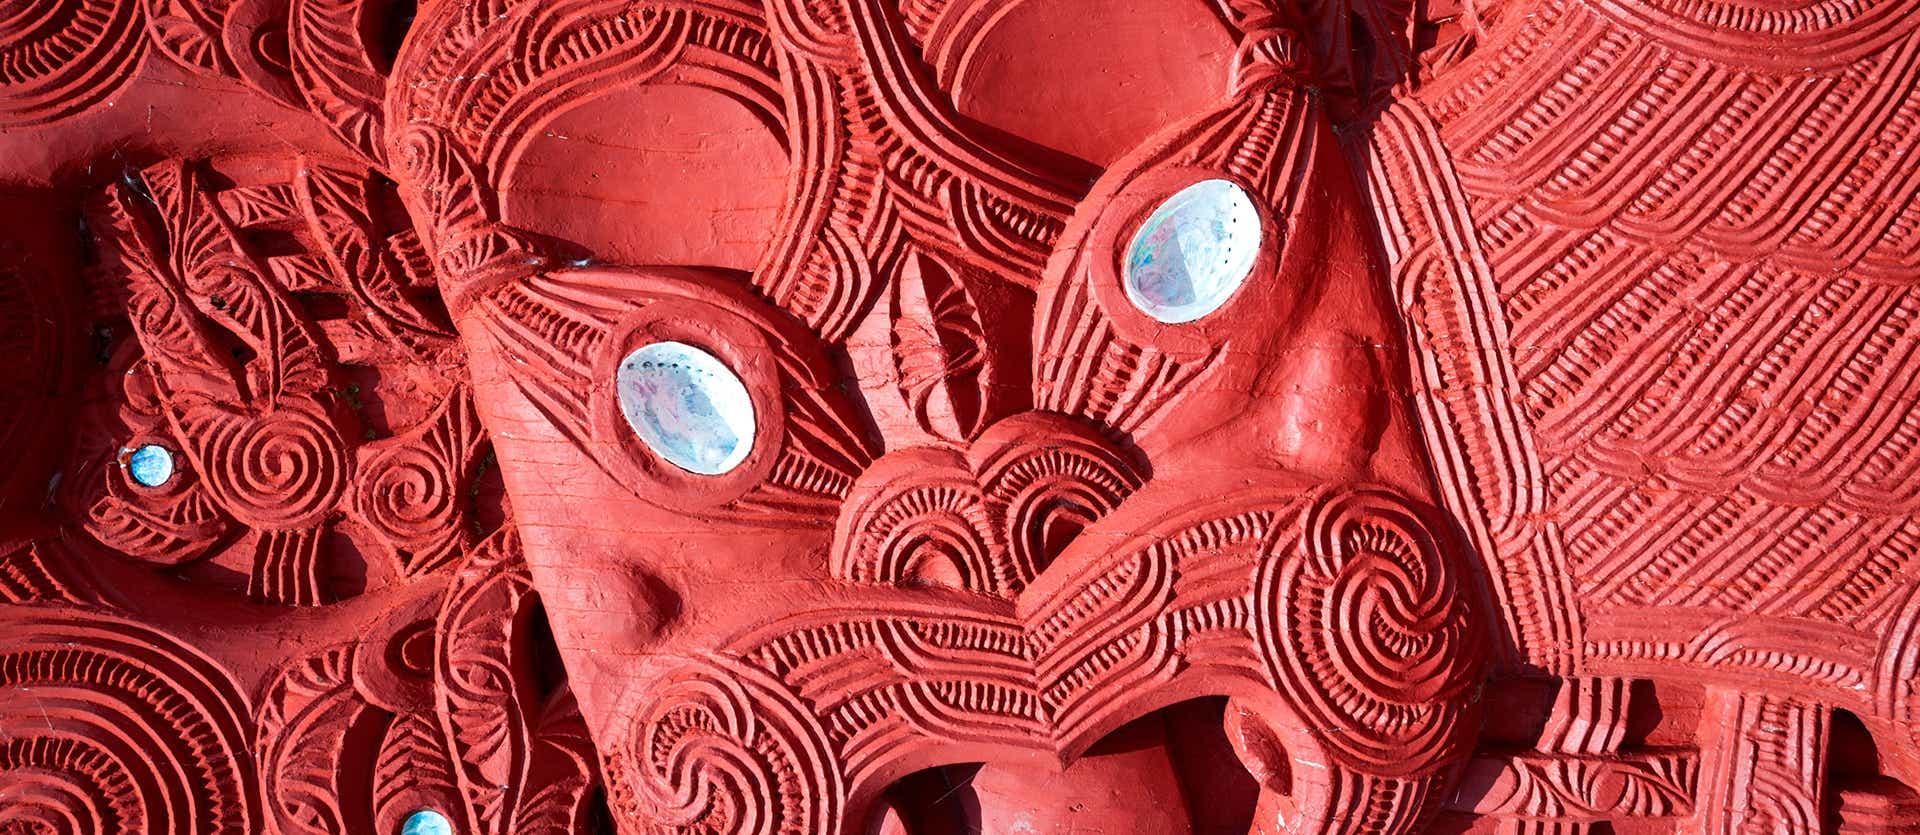 Máscaras maoríes <span class="iconos separador"></span> Rotorúa